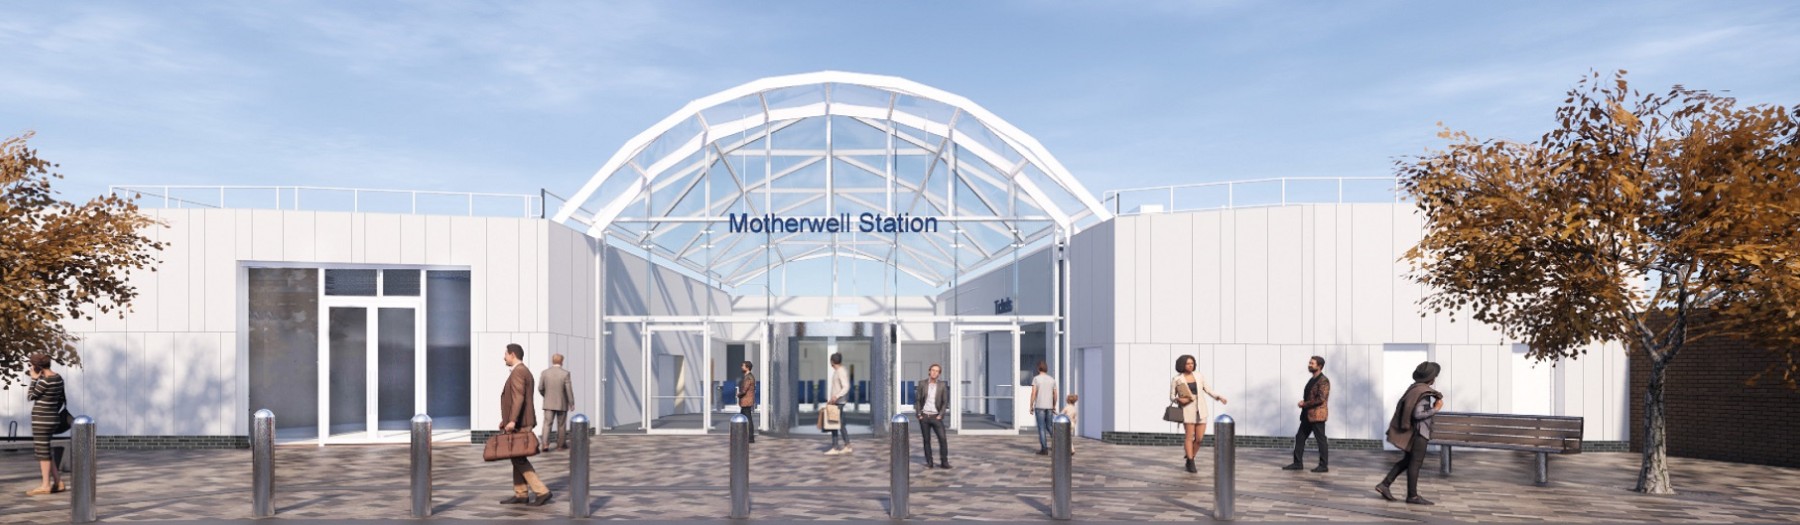 Inner banner - Motherwell station